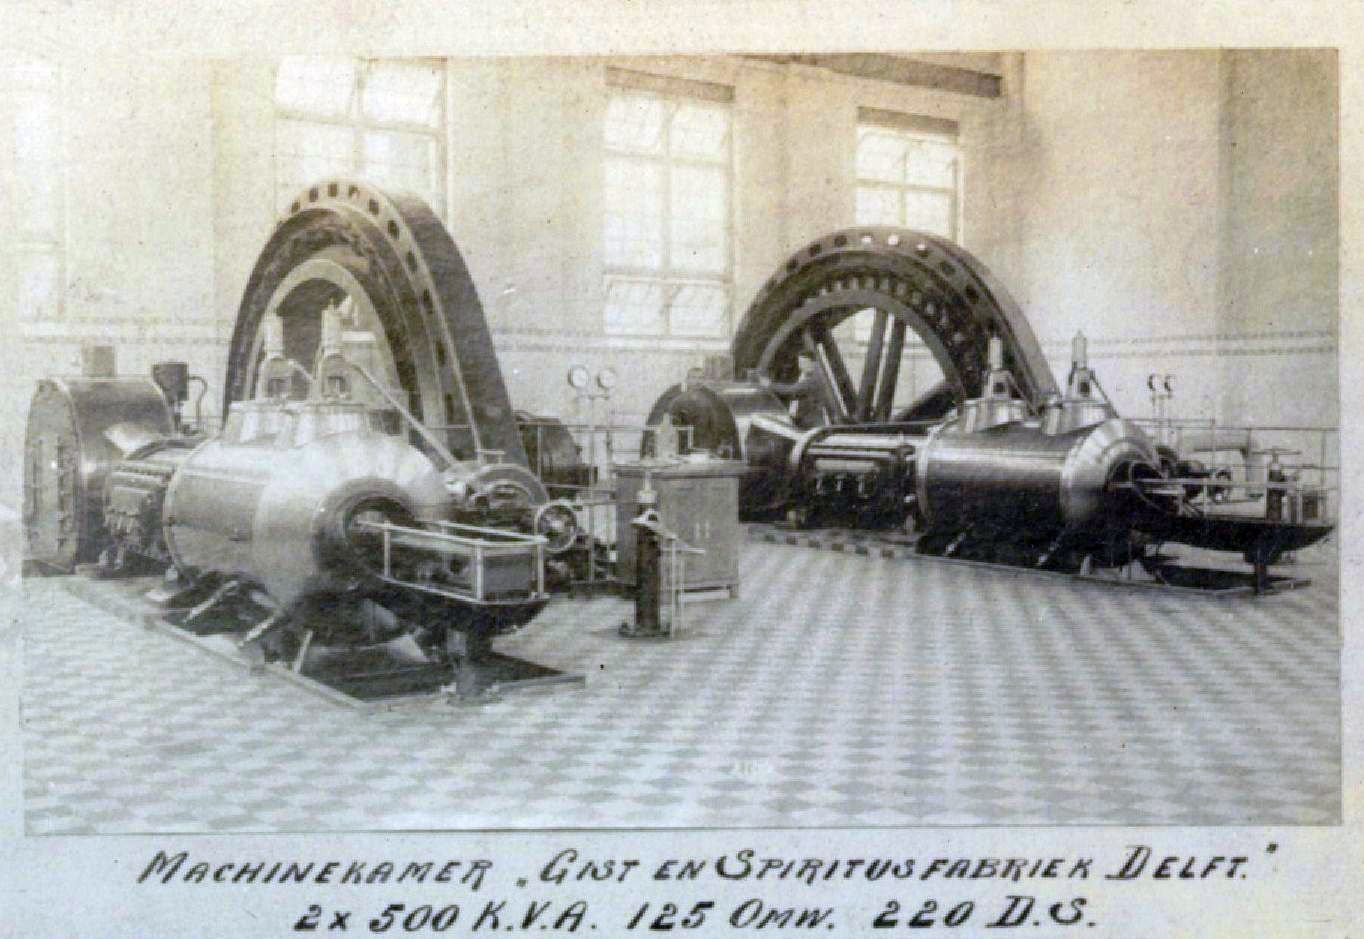 Machinekamer van de Nederl. Gist en Spiritus fabriek in 1914 met machines van Smit Slikkerveer.